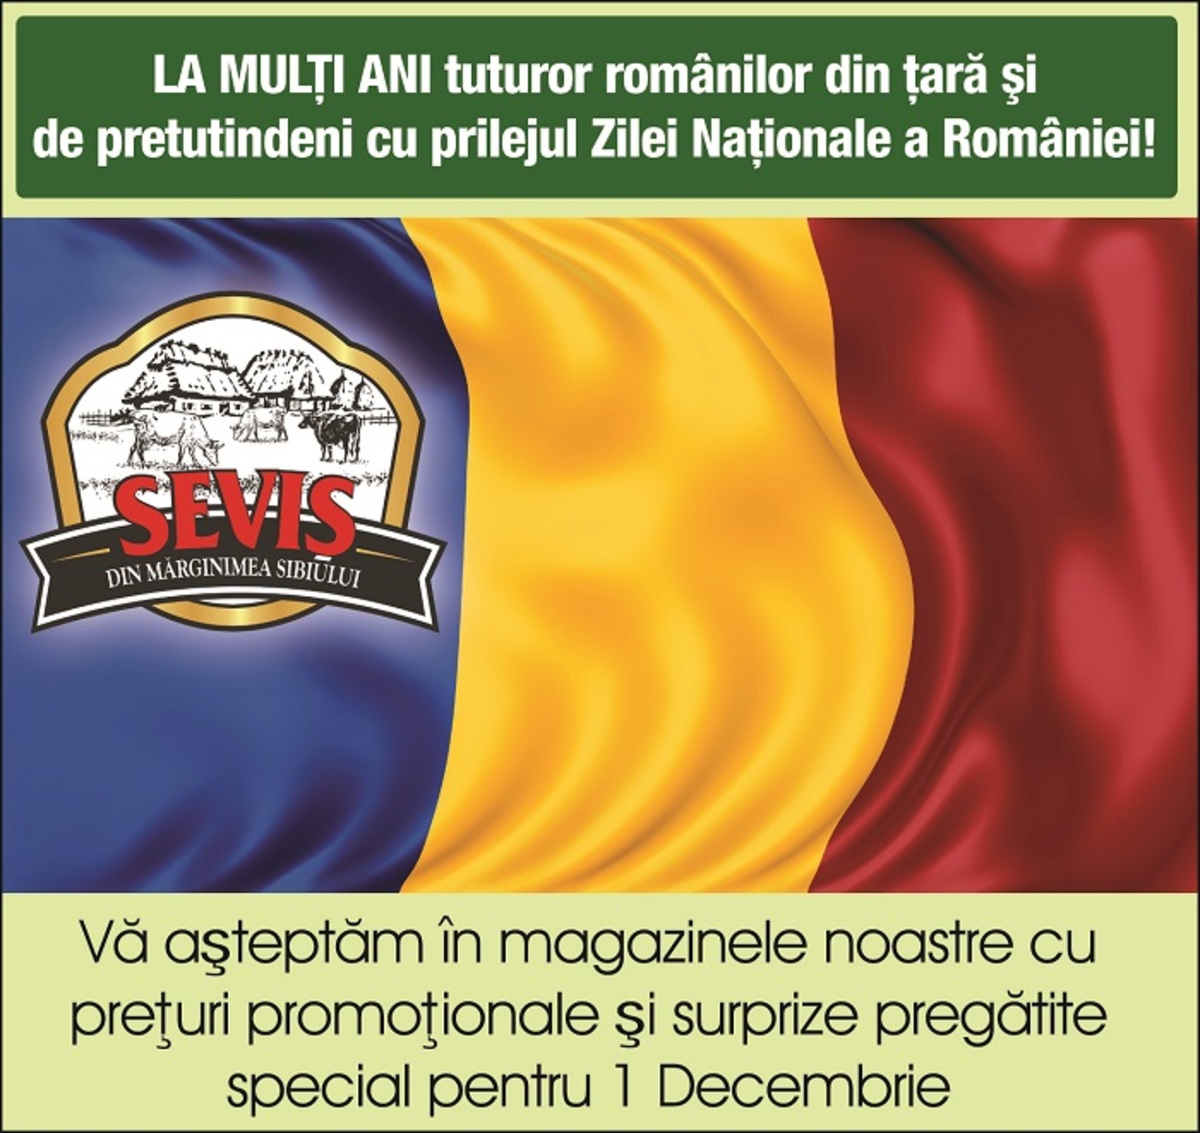 Ziua Națională a României este o zi de respect, mândrie și recunoştință